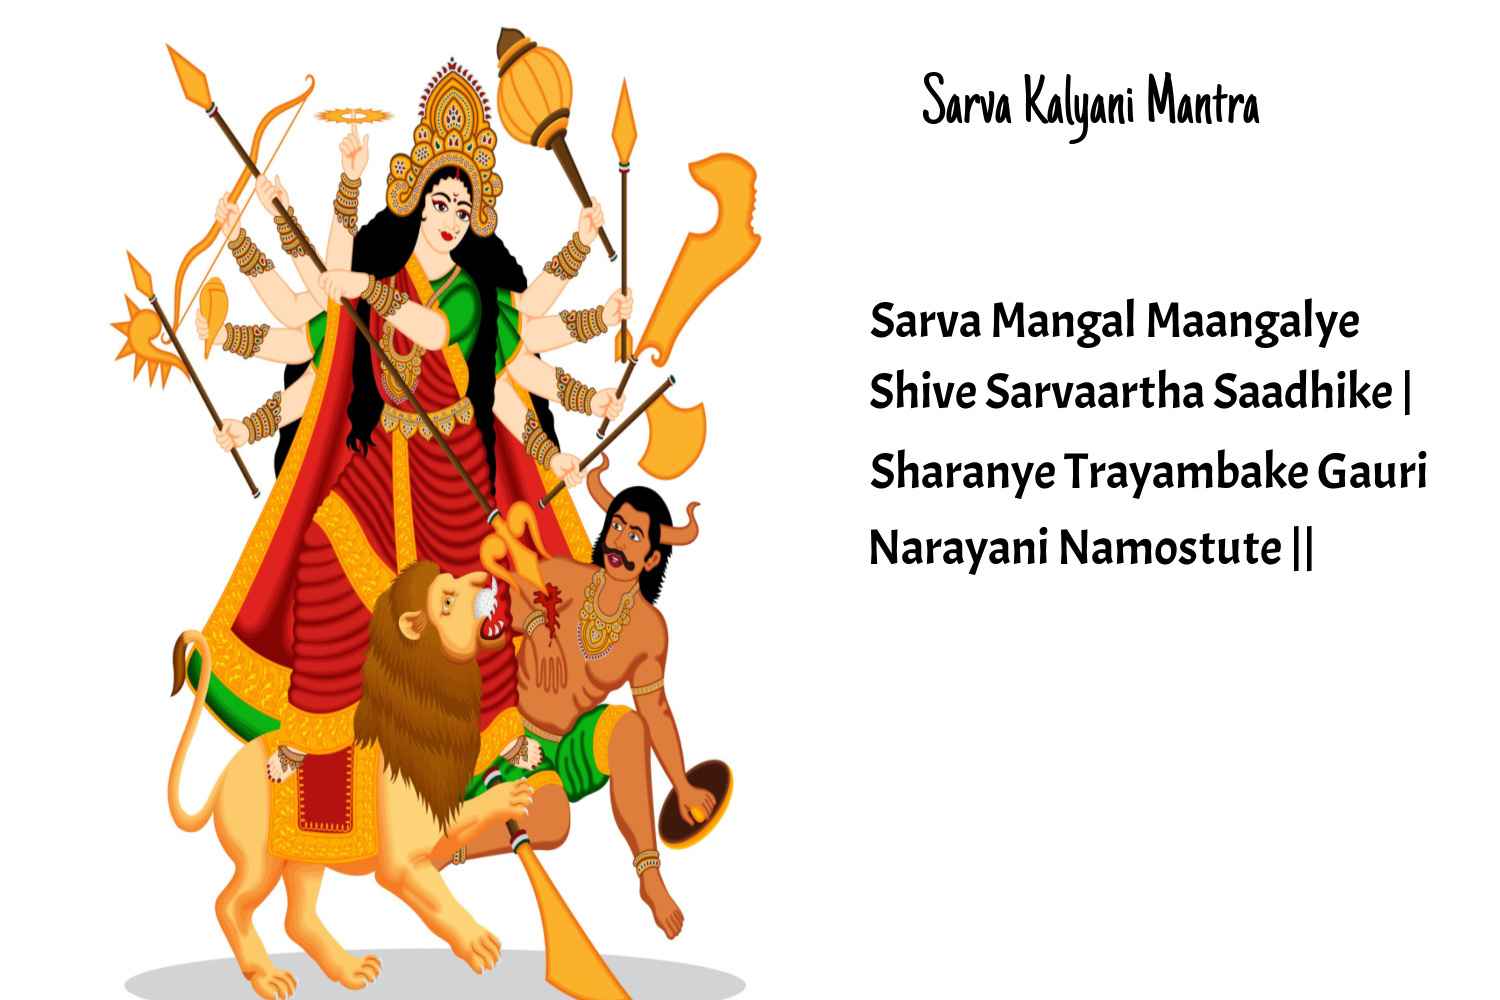 Sarva Kalyani Mantra